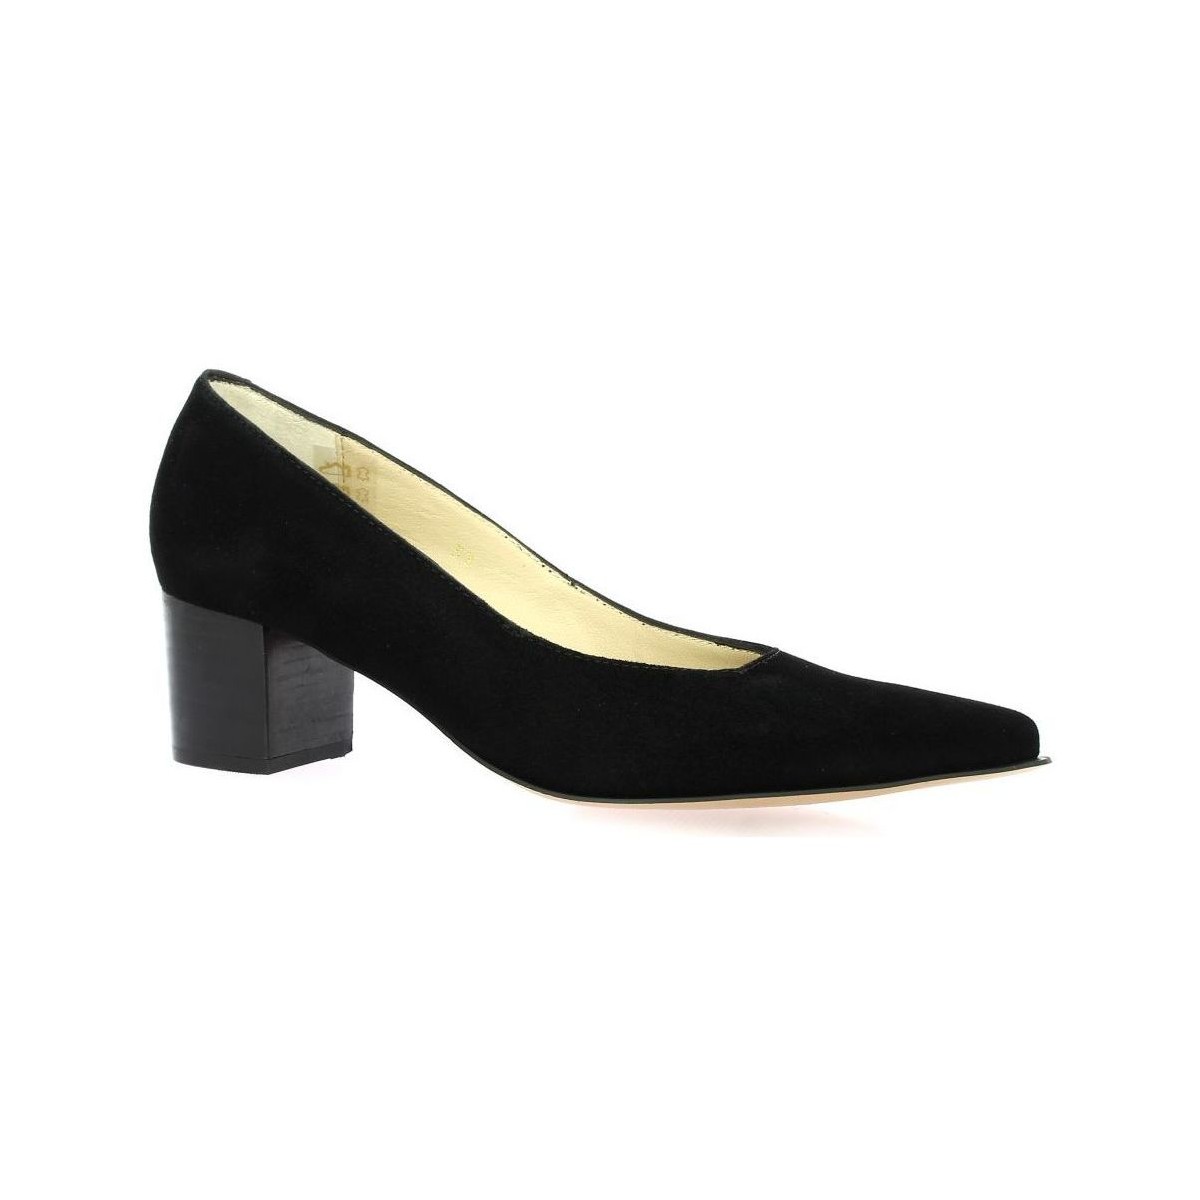 Chaussures Femme par courrier électronique : à Escarpins cuir velours Noir